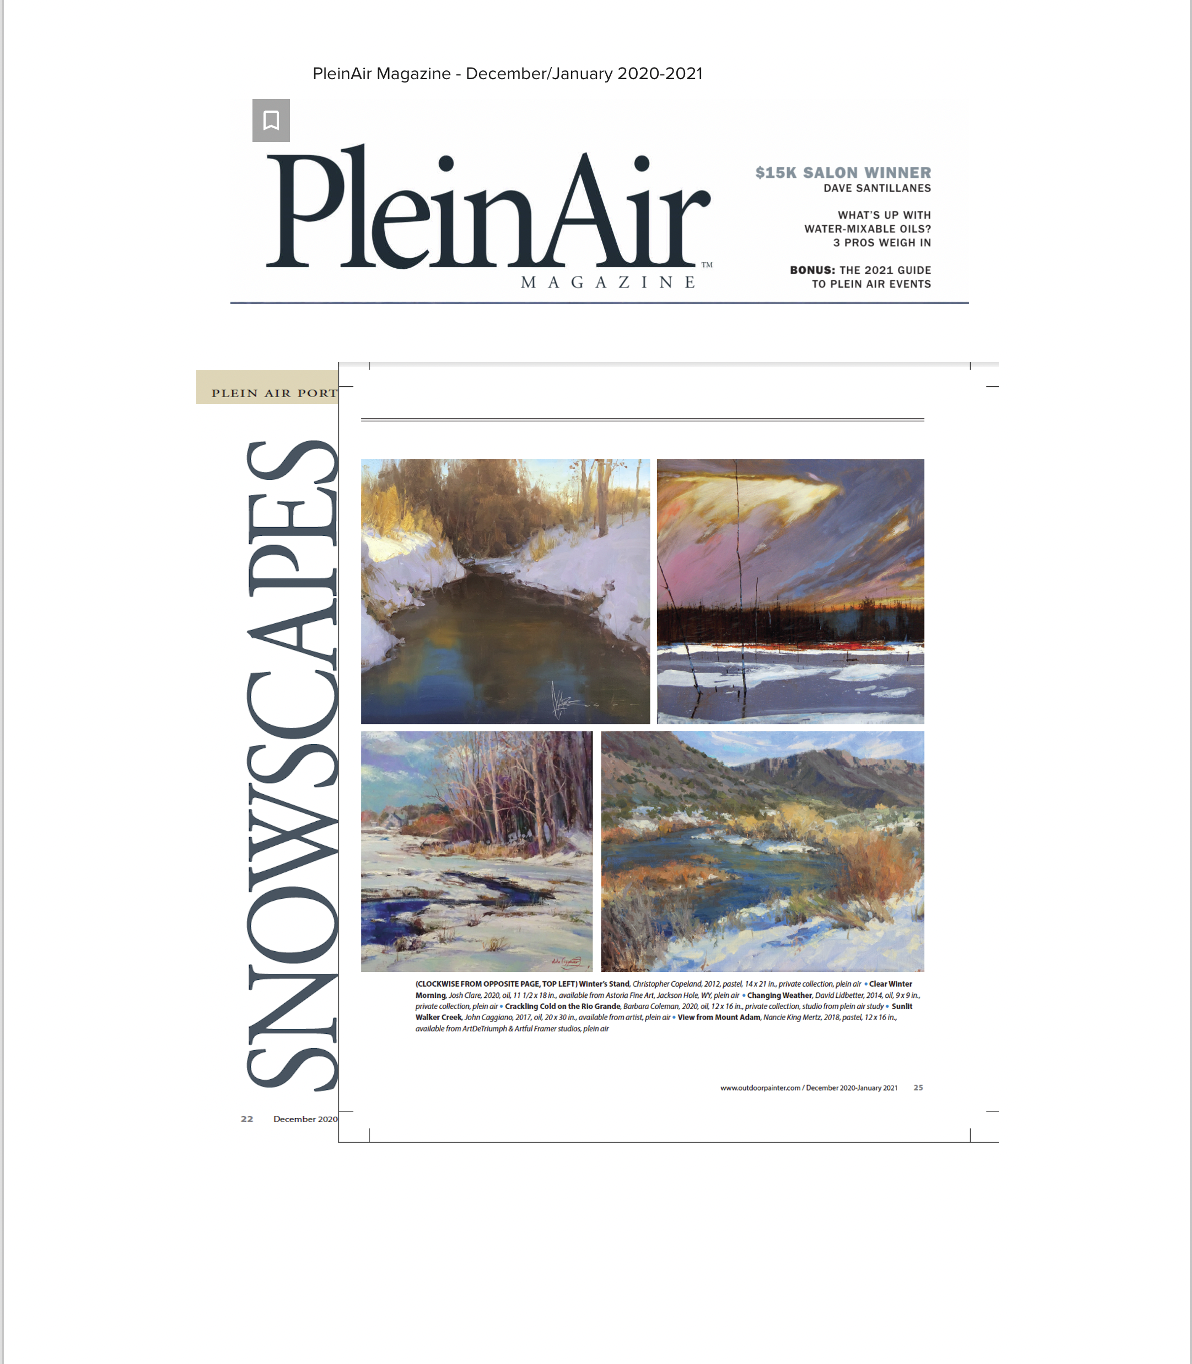 Plein Air Magazine, Dec/Jan 2020/2021